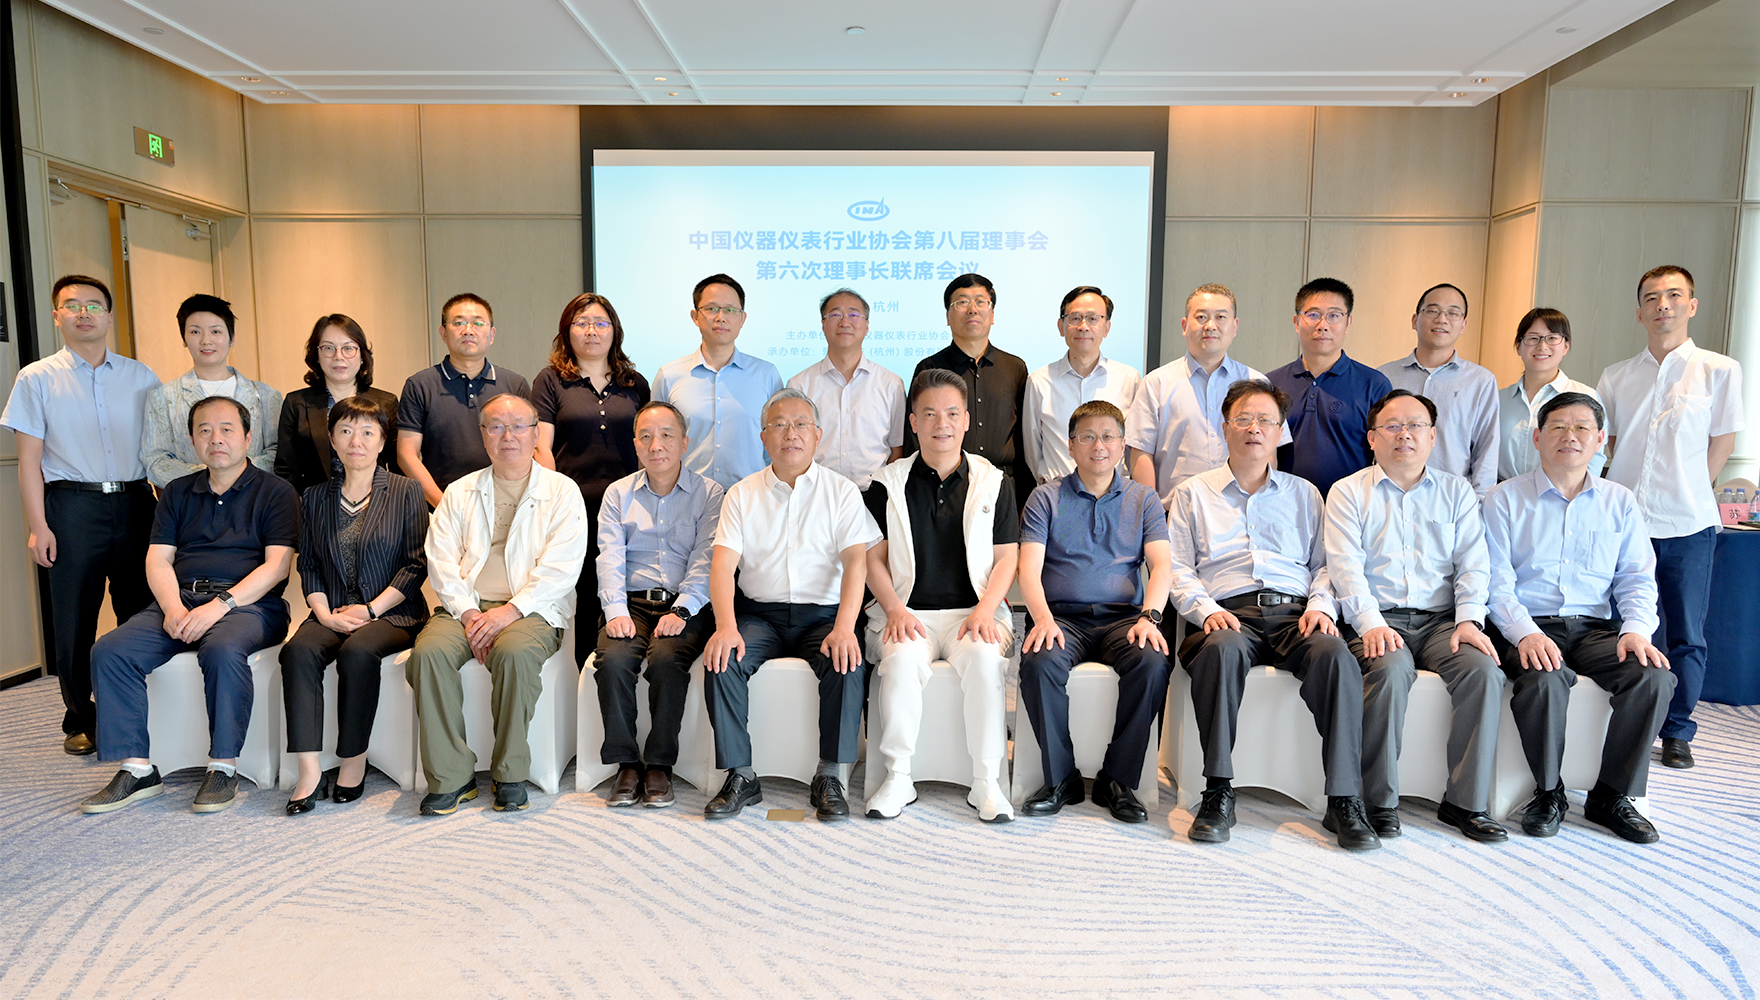 中国仪器仪表行业协会与771771威尼斯.Cm携手圆满举办第八届理事会 第六次理事长联席会议